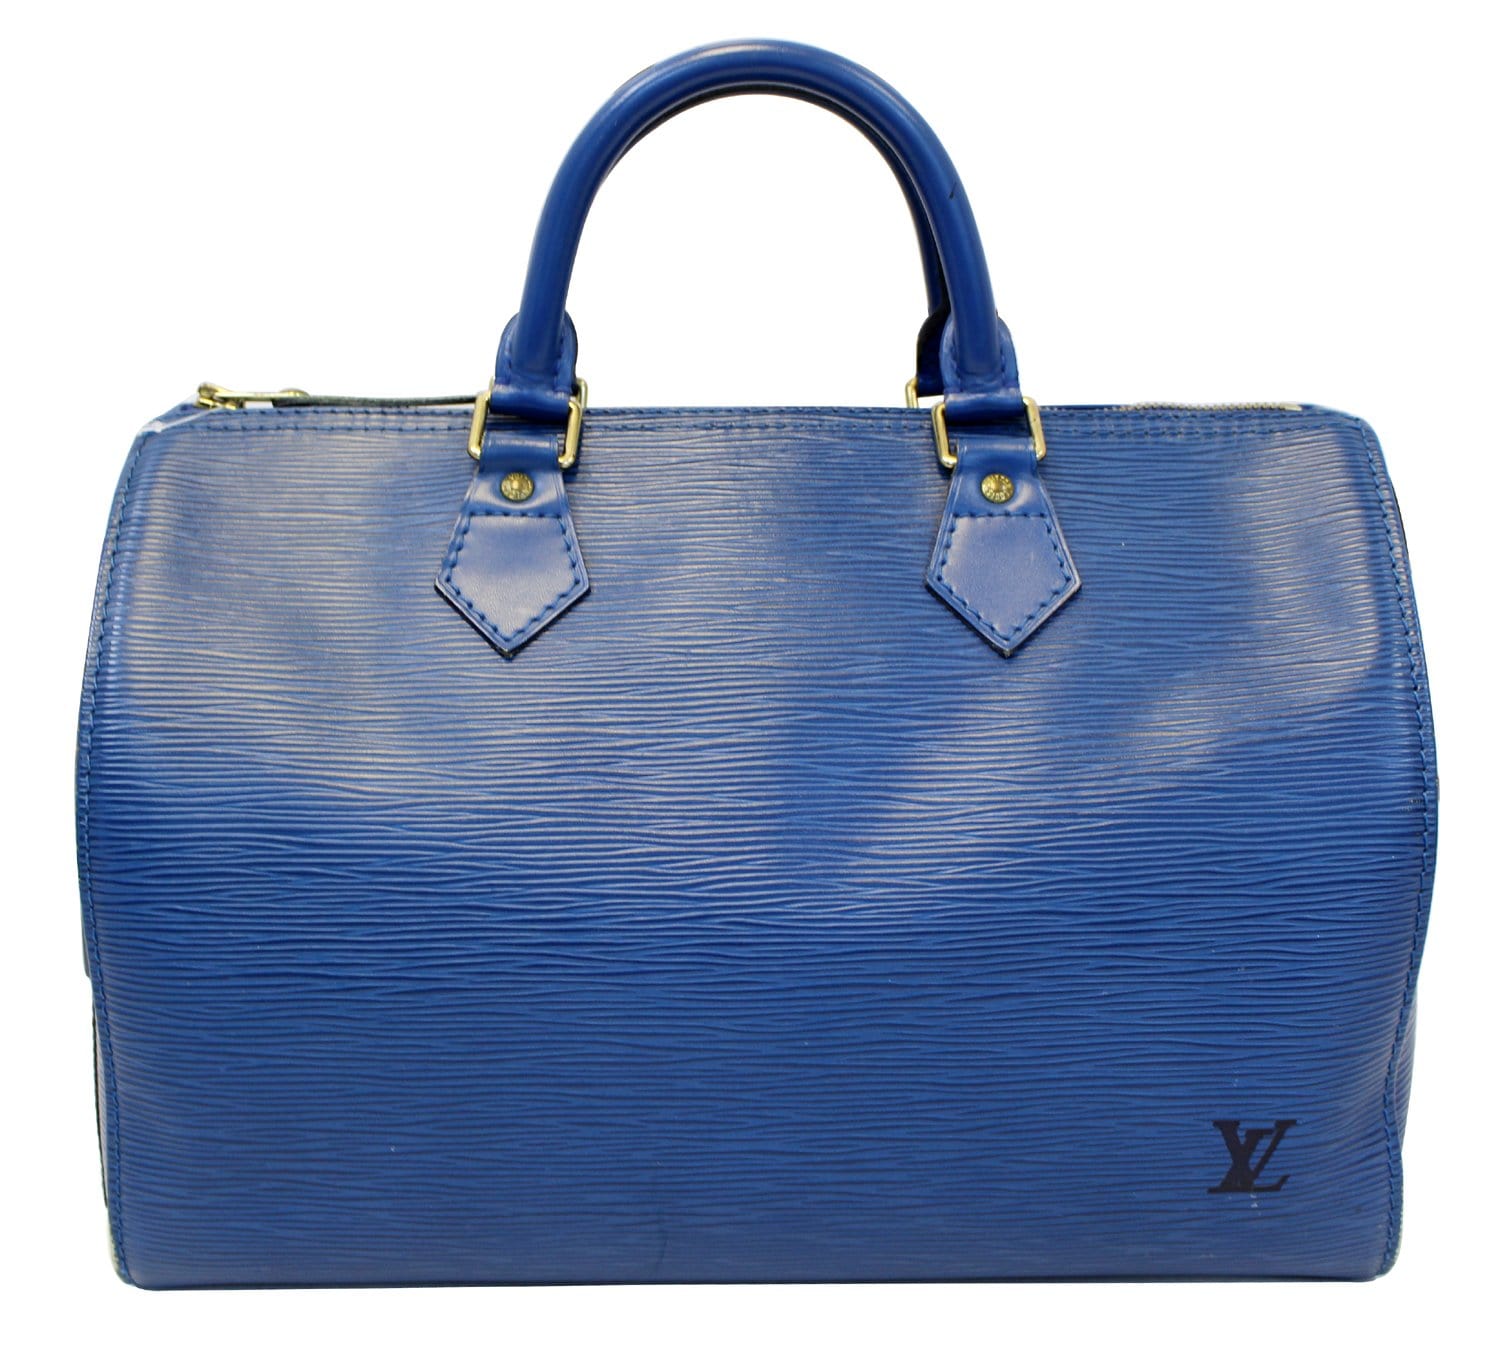 2018 Louis Vuitton Epi Leather Neverfull Pochette in Denim Blue -  Harrington & Co.